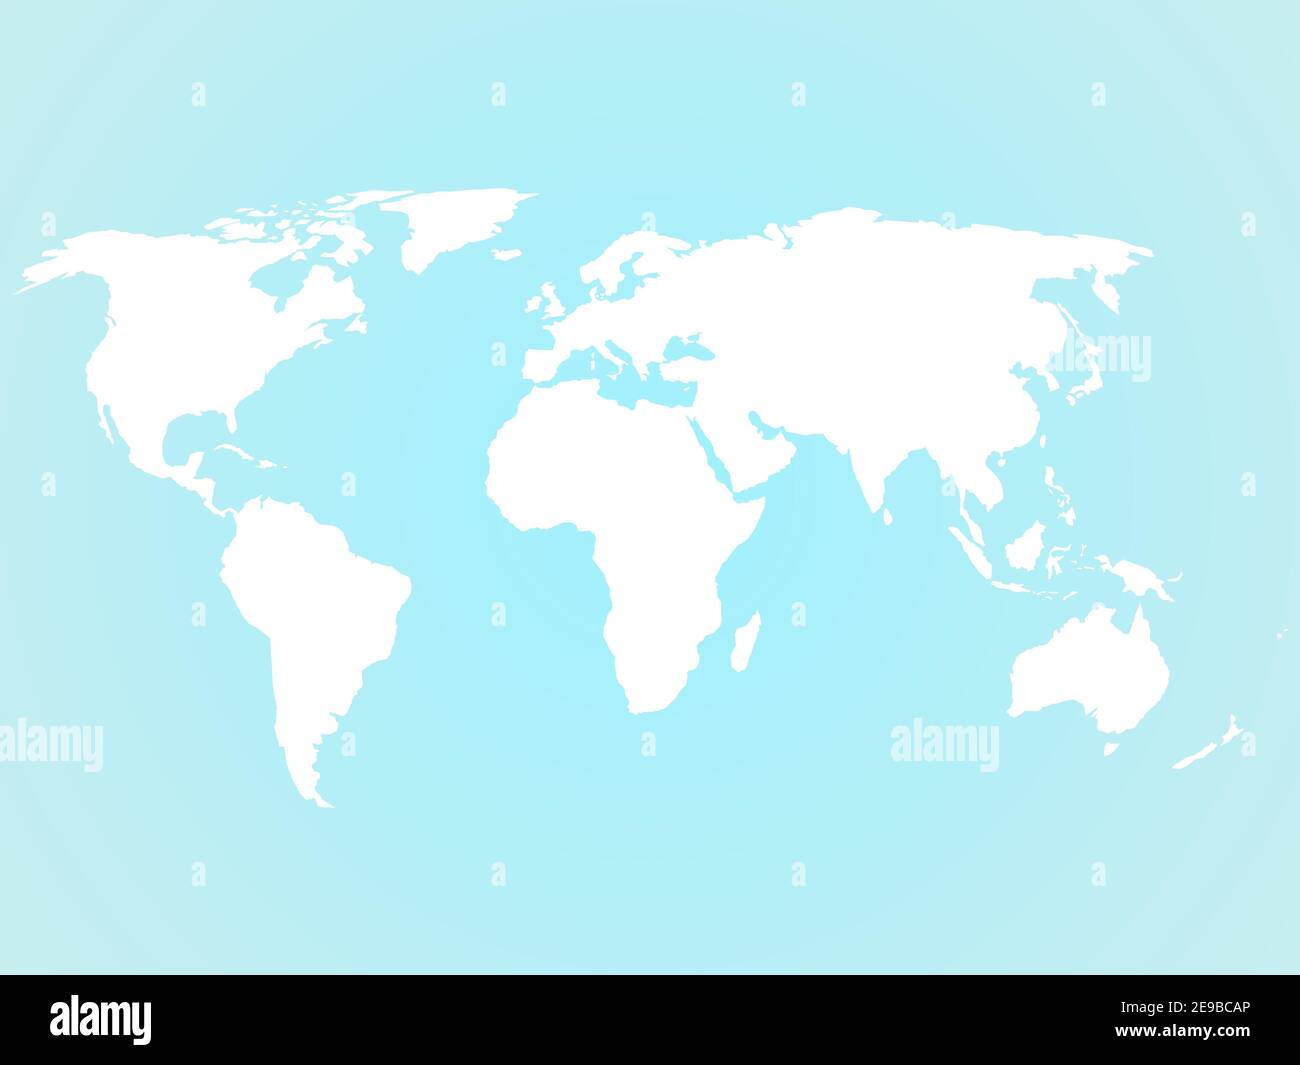 Silhouette simplifiée de la carte du monde blanche sur fond bleu turquoise. Illustration vectorielle. Illustration de Vecteur